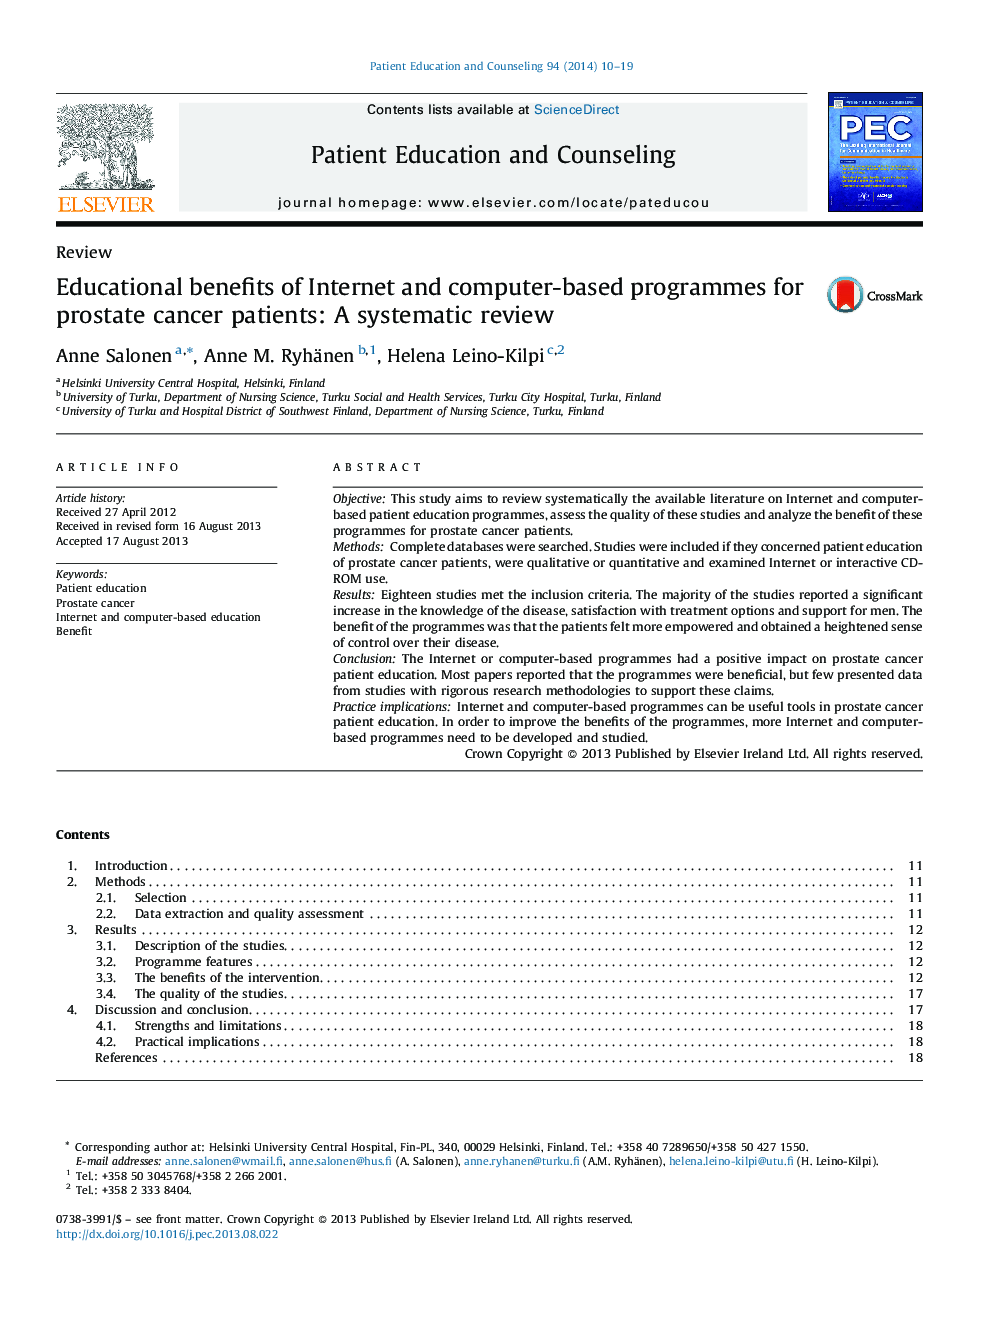 مزایای آموزشی اینترنت و برنامه های مبتنی بر رایانه برای بیماران مبتلا به سرطان پروستات: بررسی سیستماتیک 